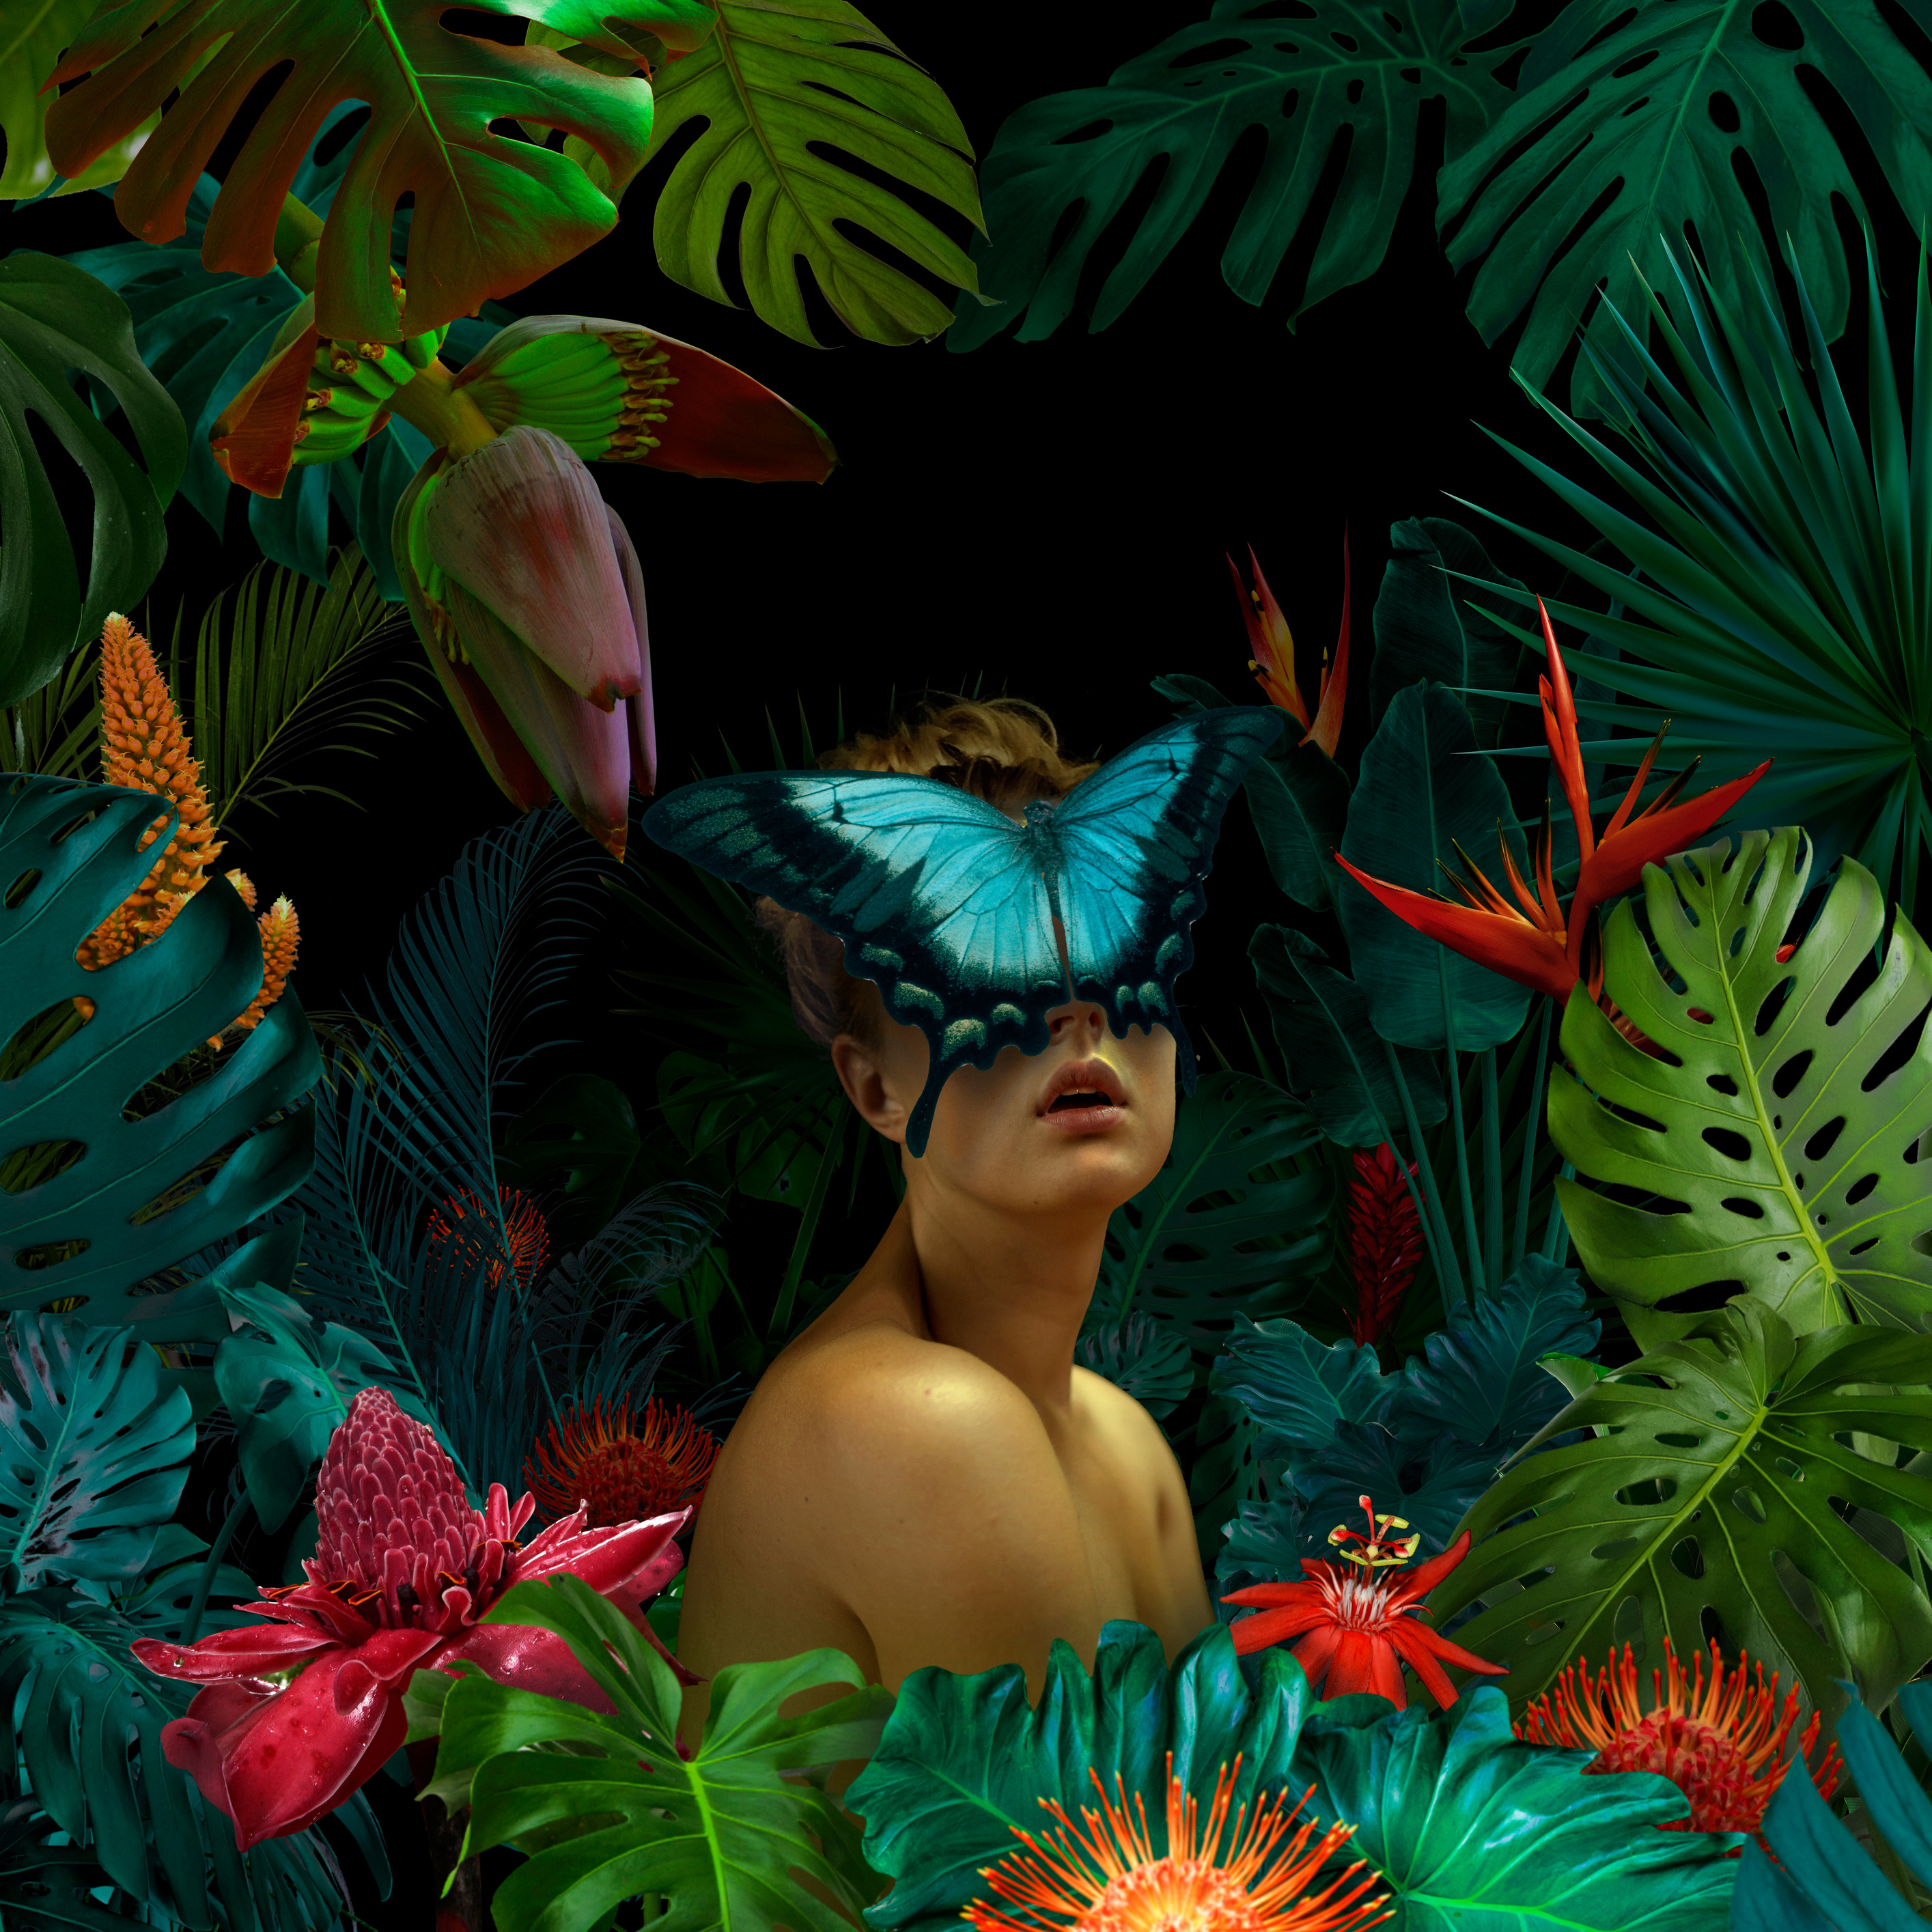 Surreal jungle portrait